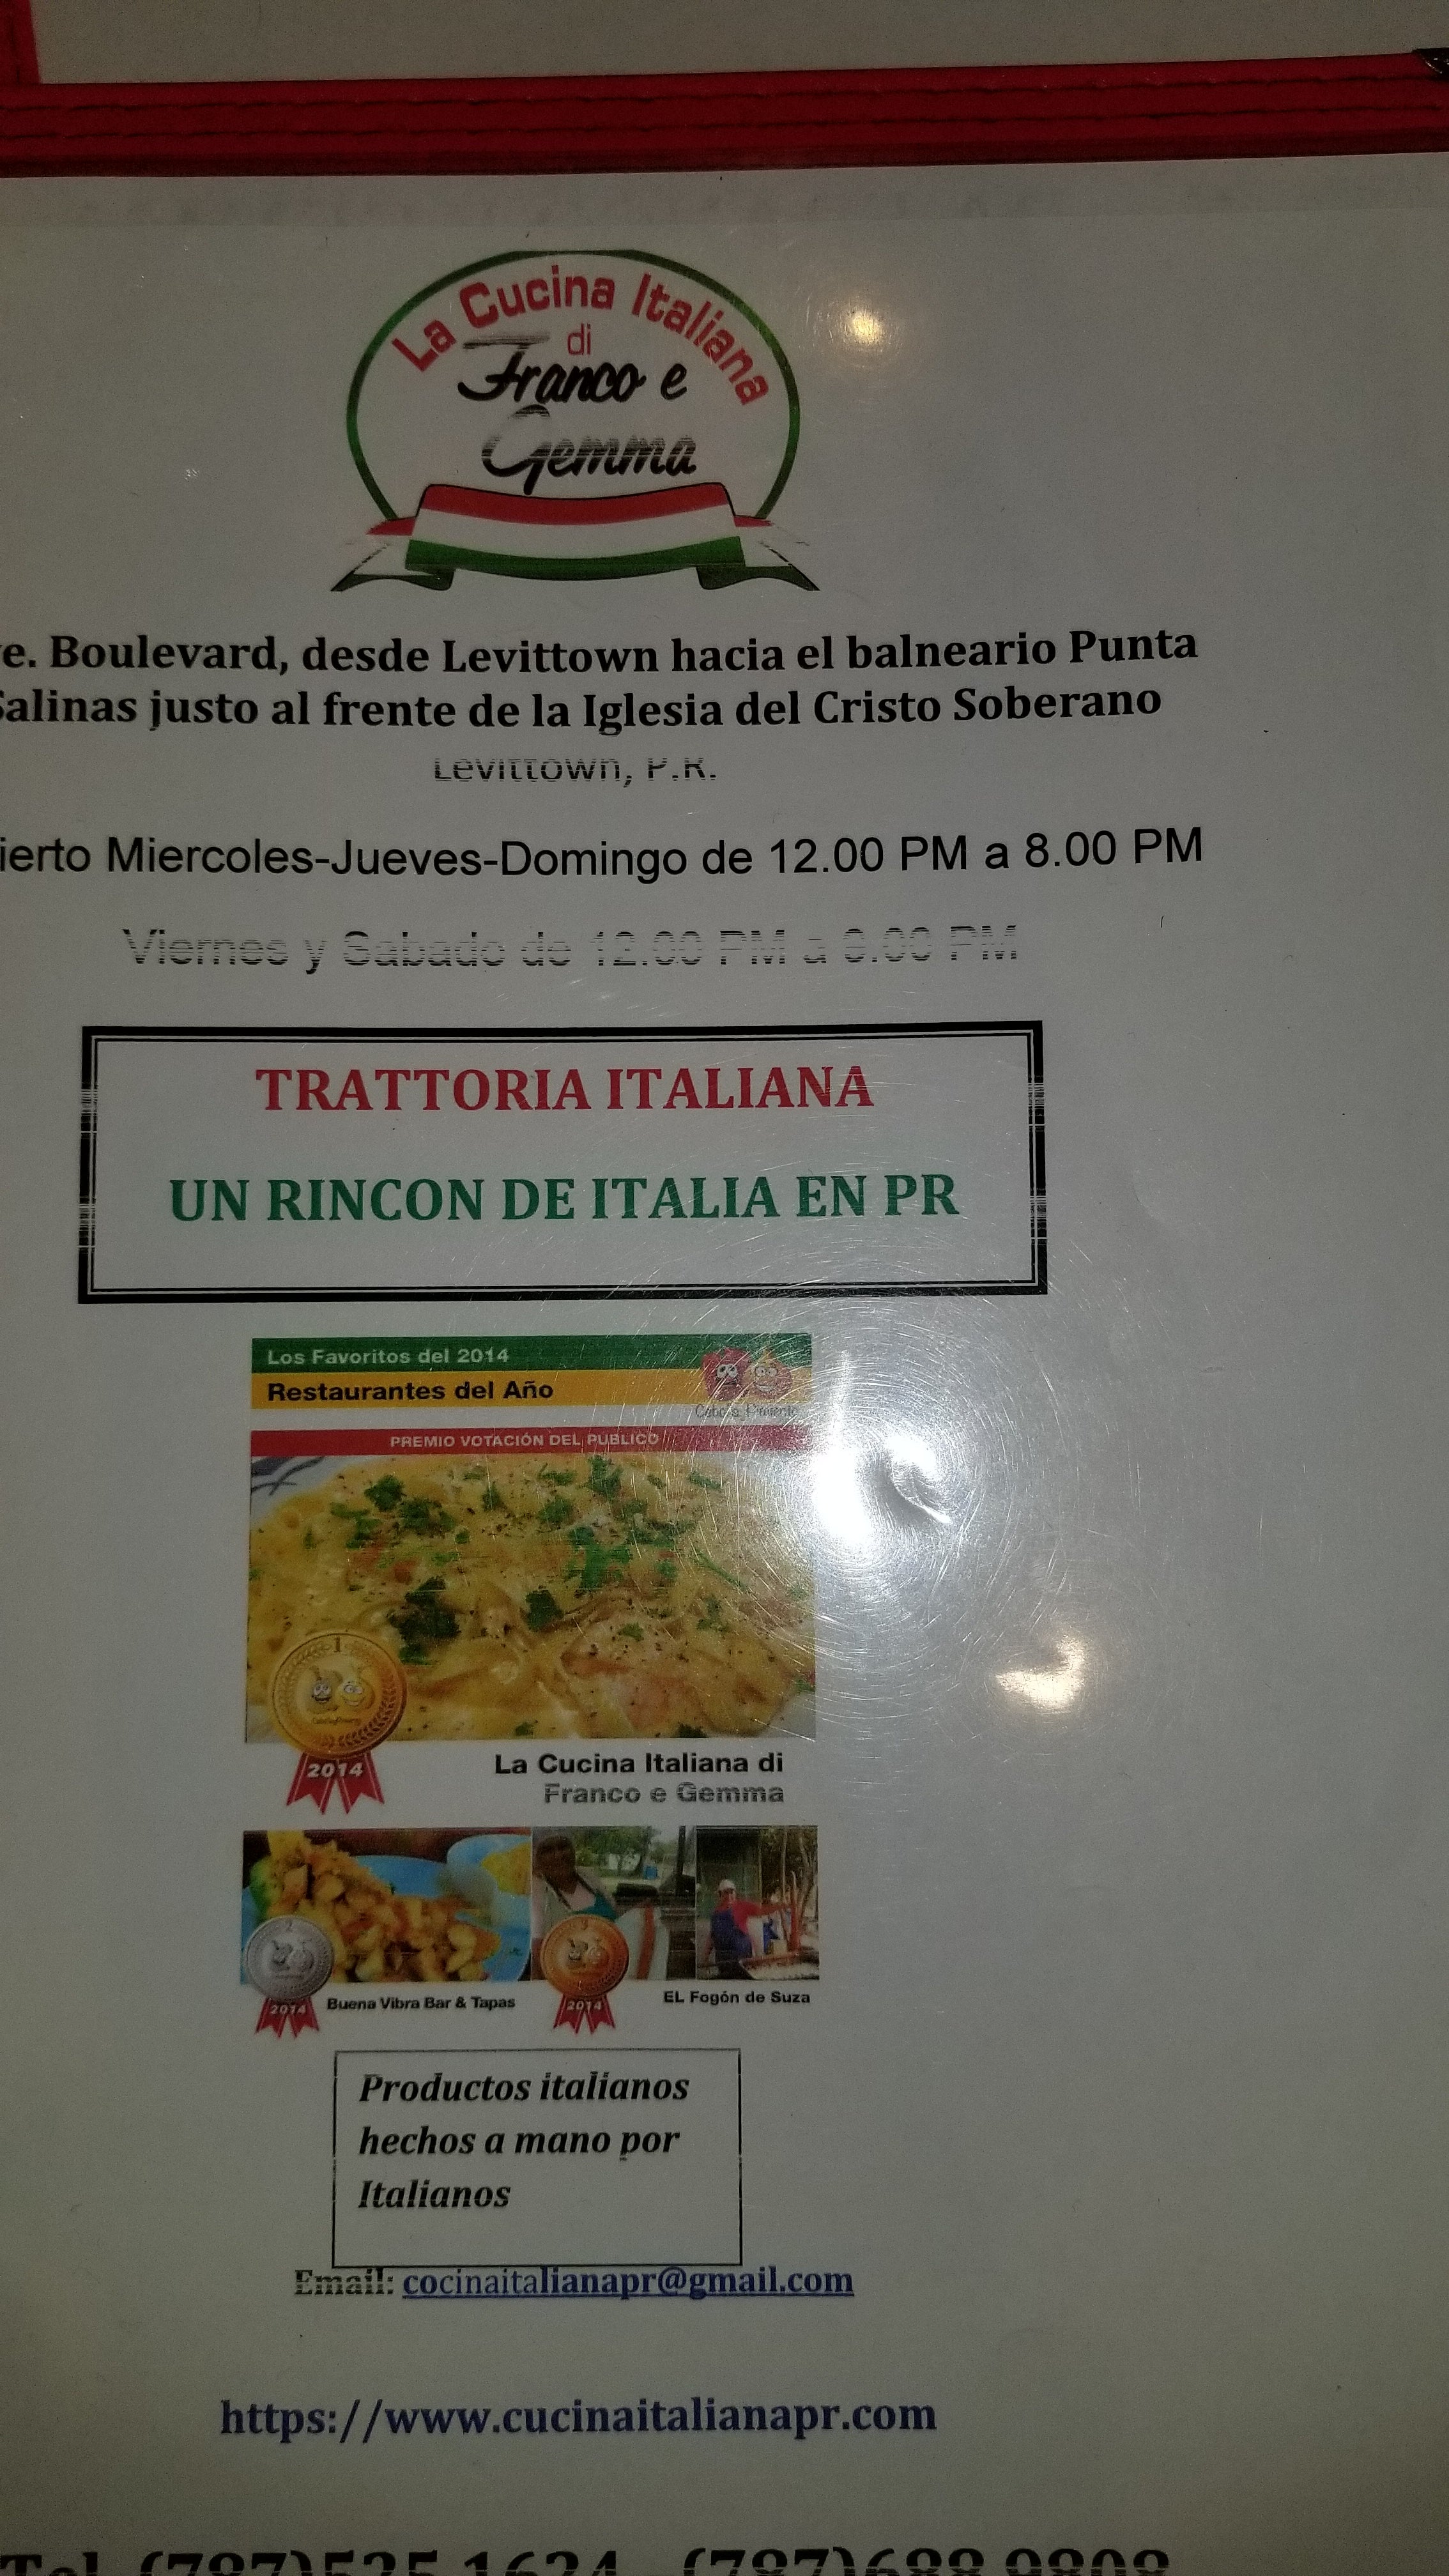 La Cucina Italiana di Franco e Gemma